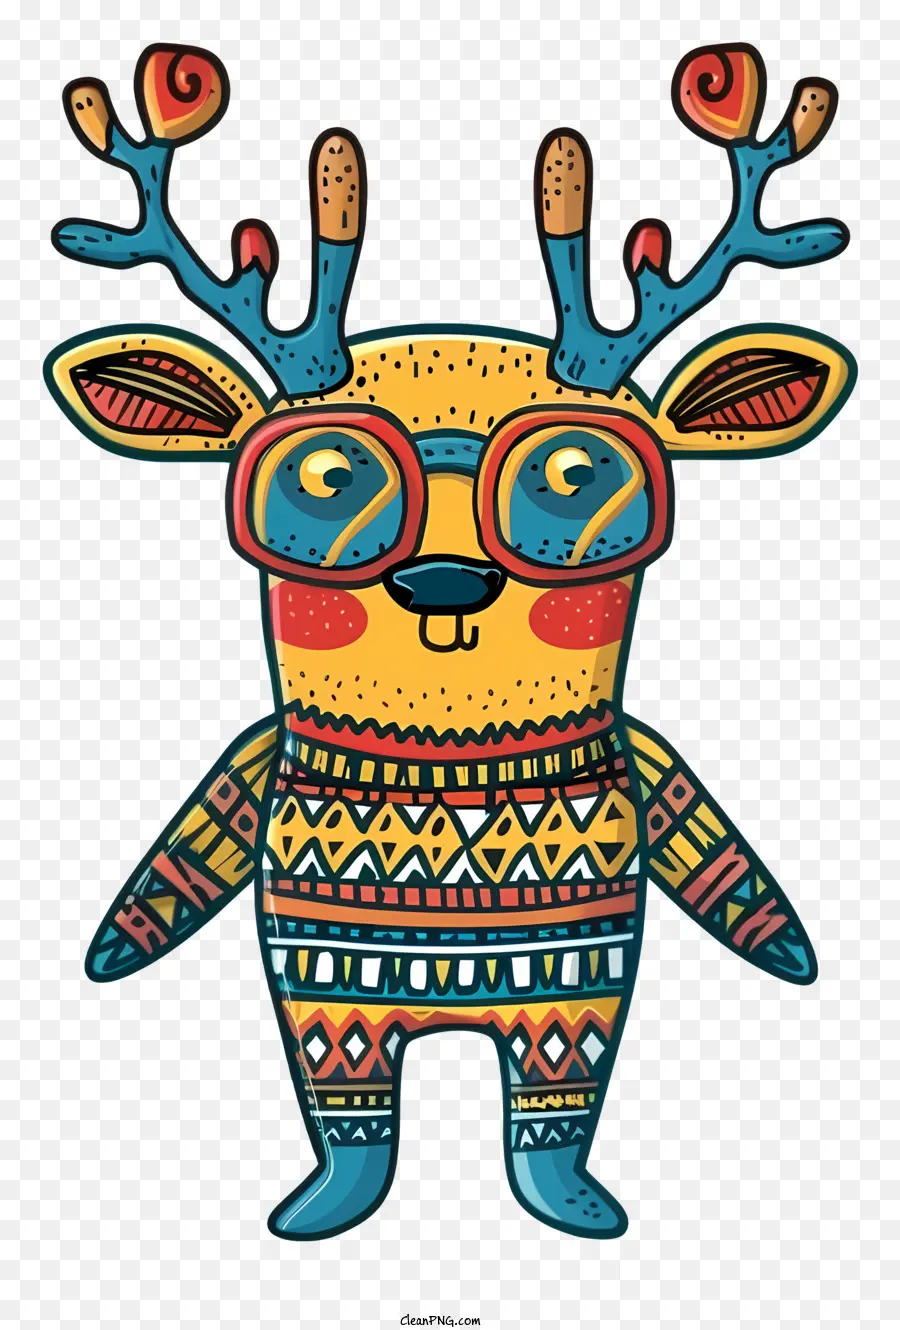 seltsame Rentier abstrakte Kunst farbenfrohe Design Hirsch Illustration Tier tragen Brille - Buntes abstraktes Hirsch mit Brille, auf zwei Beinen stehen